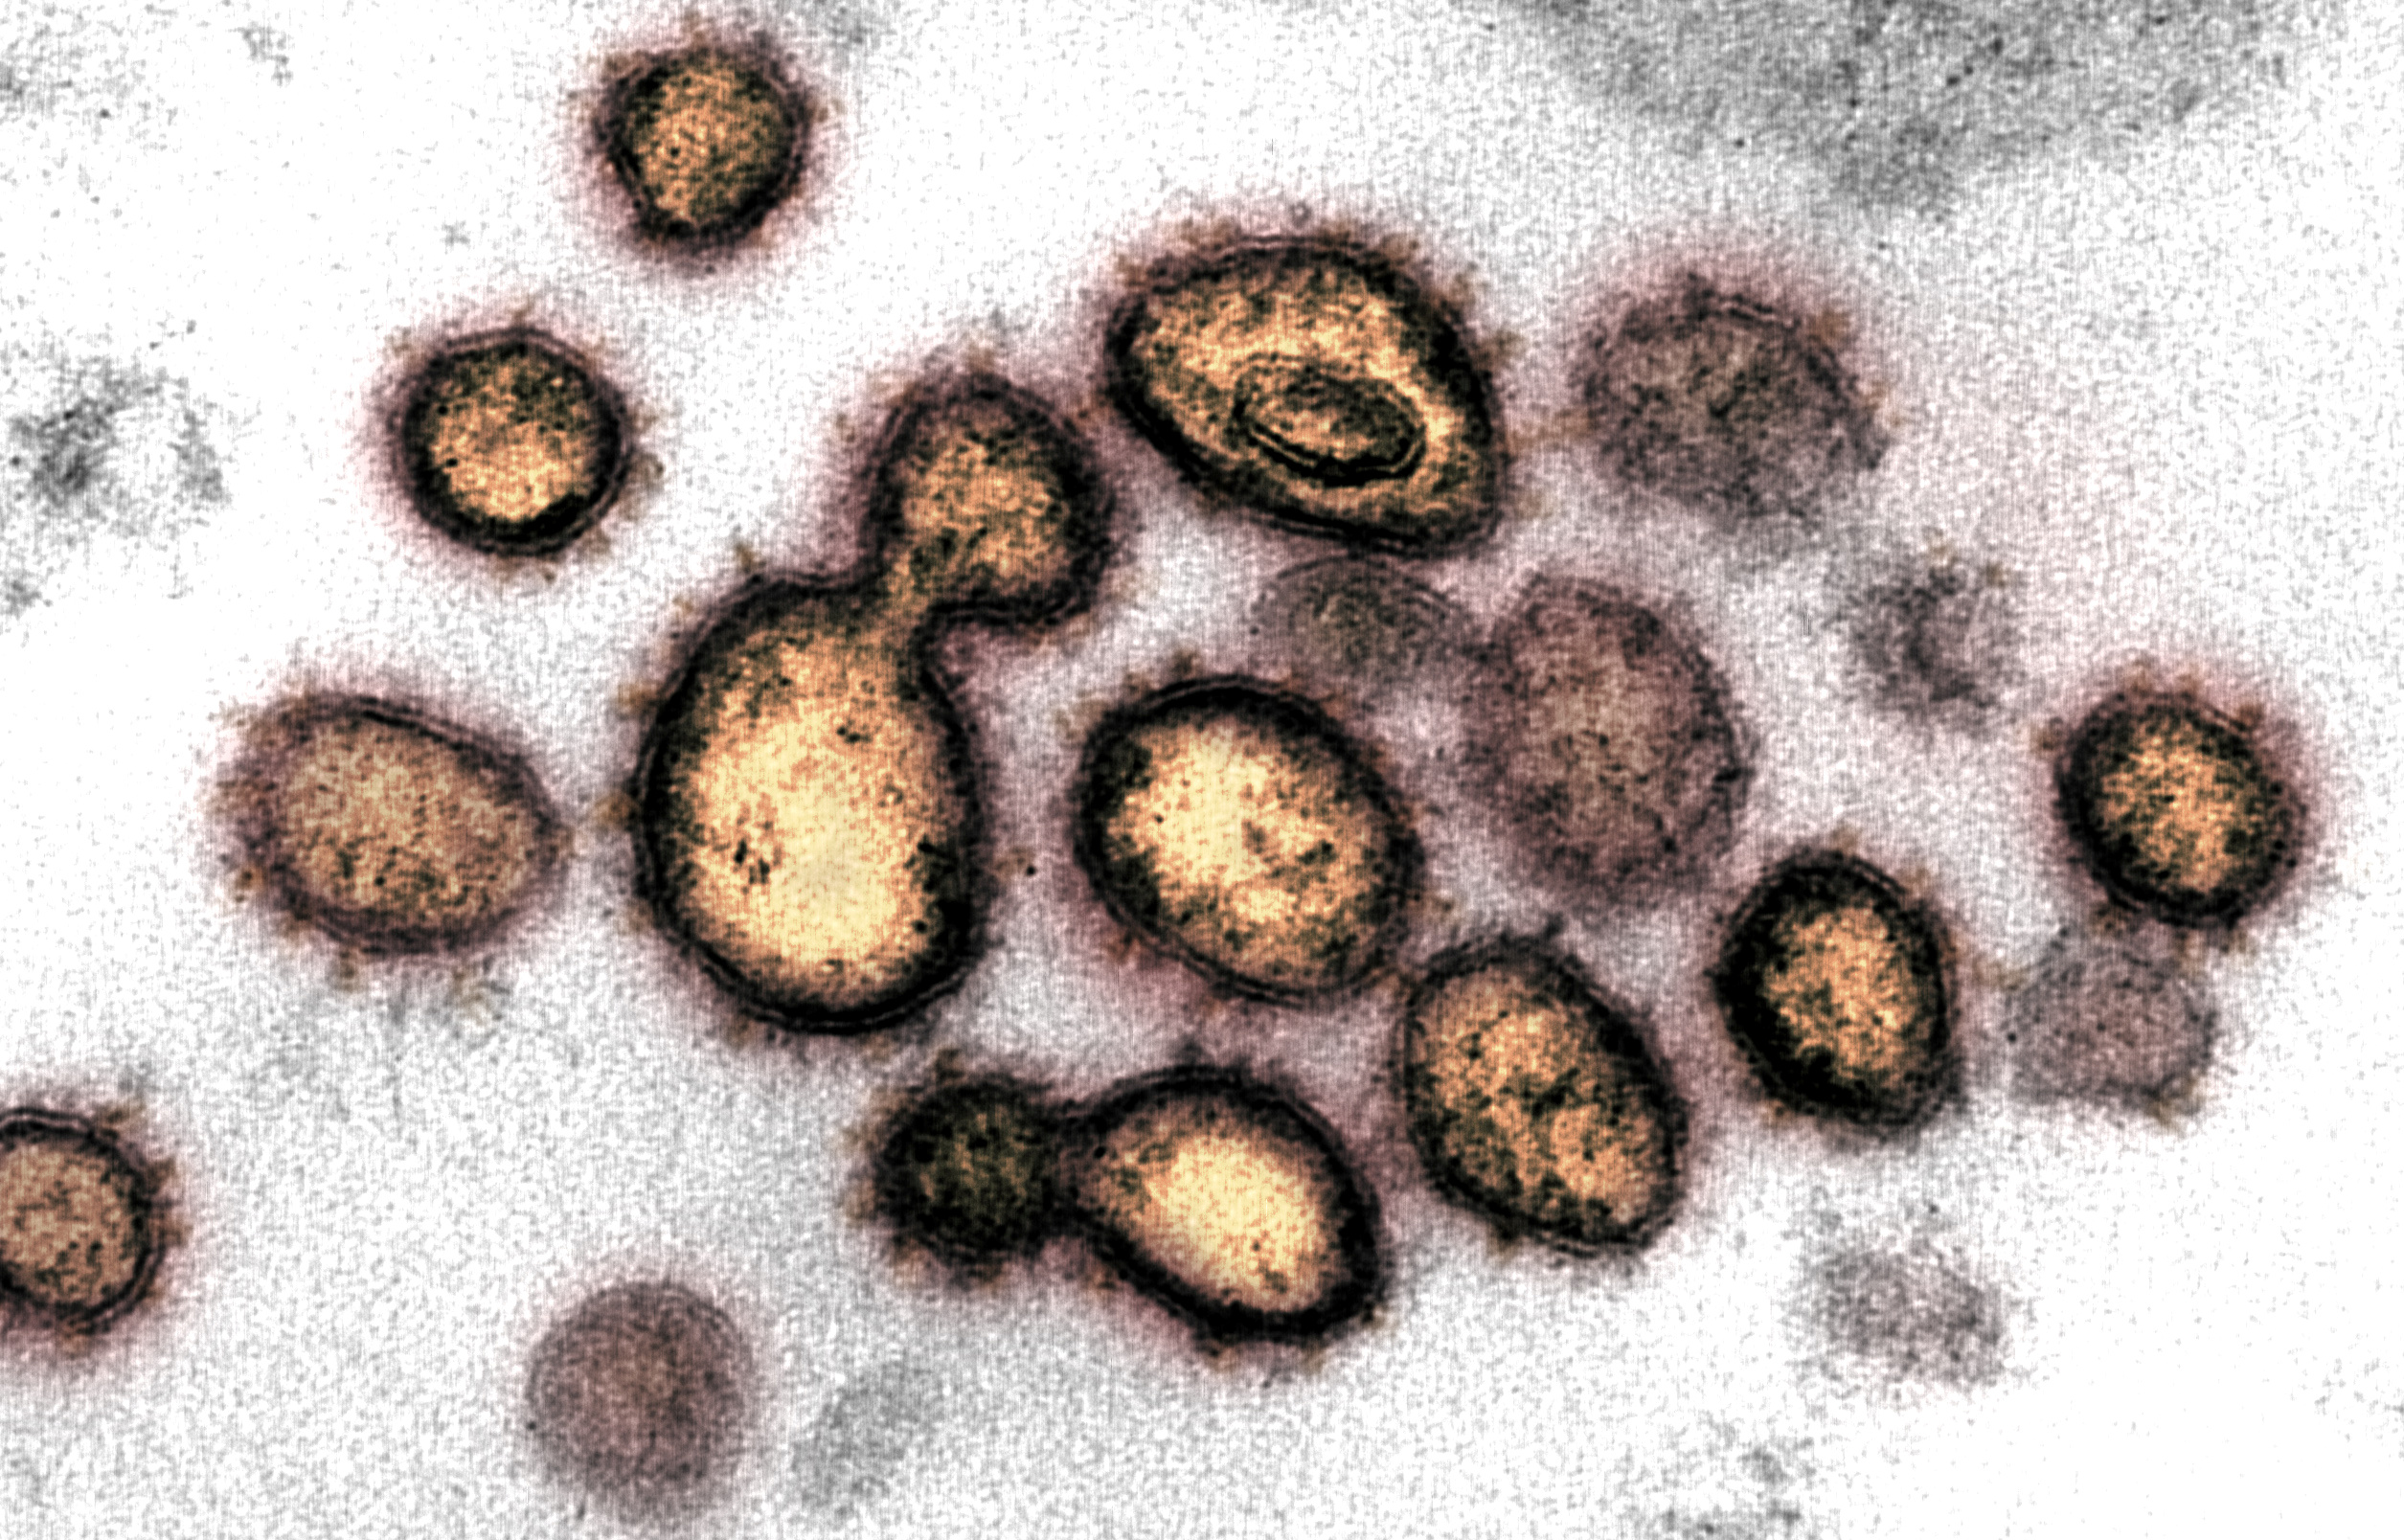 Hallan en Francia una nueva variante del coronavirus con 46 mutaciones